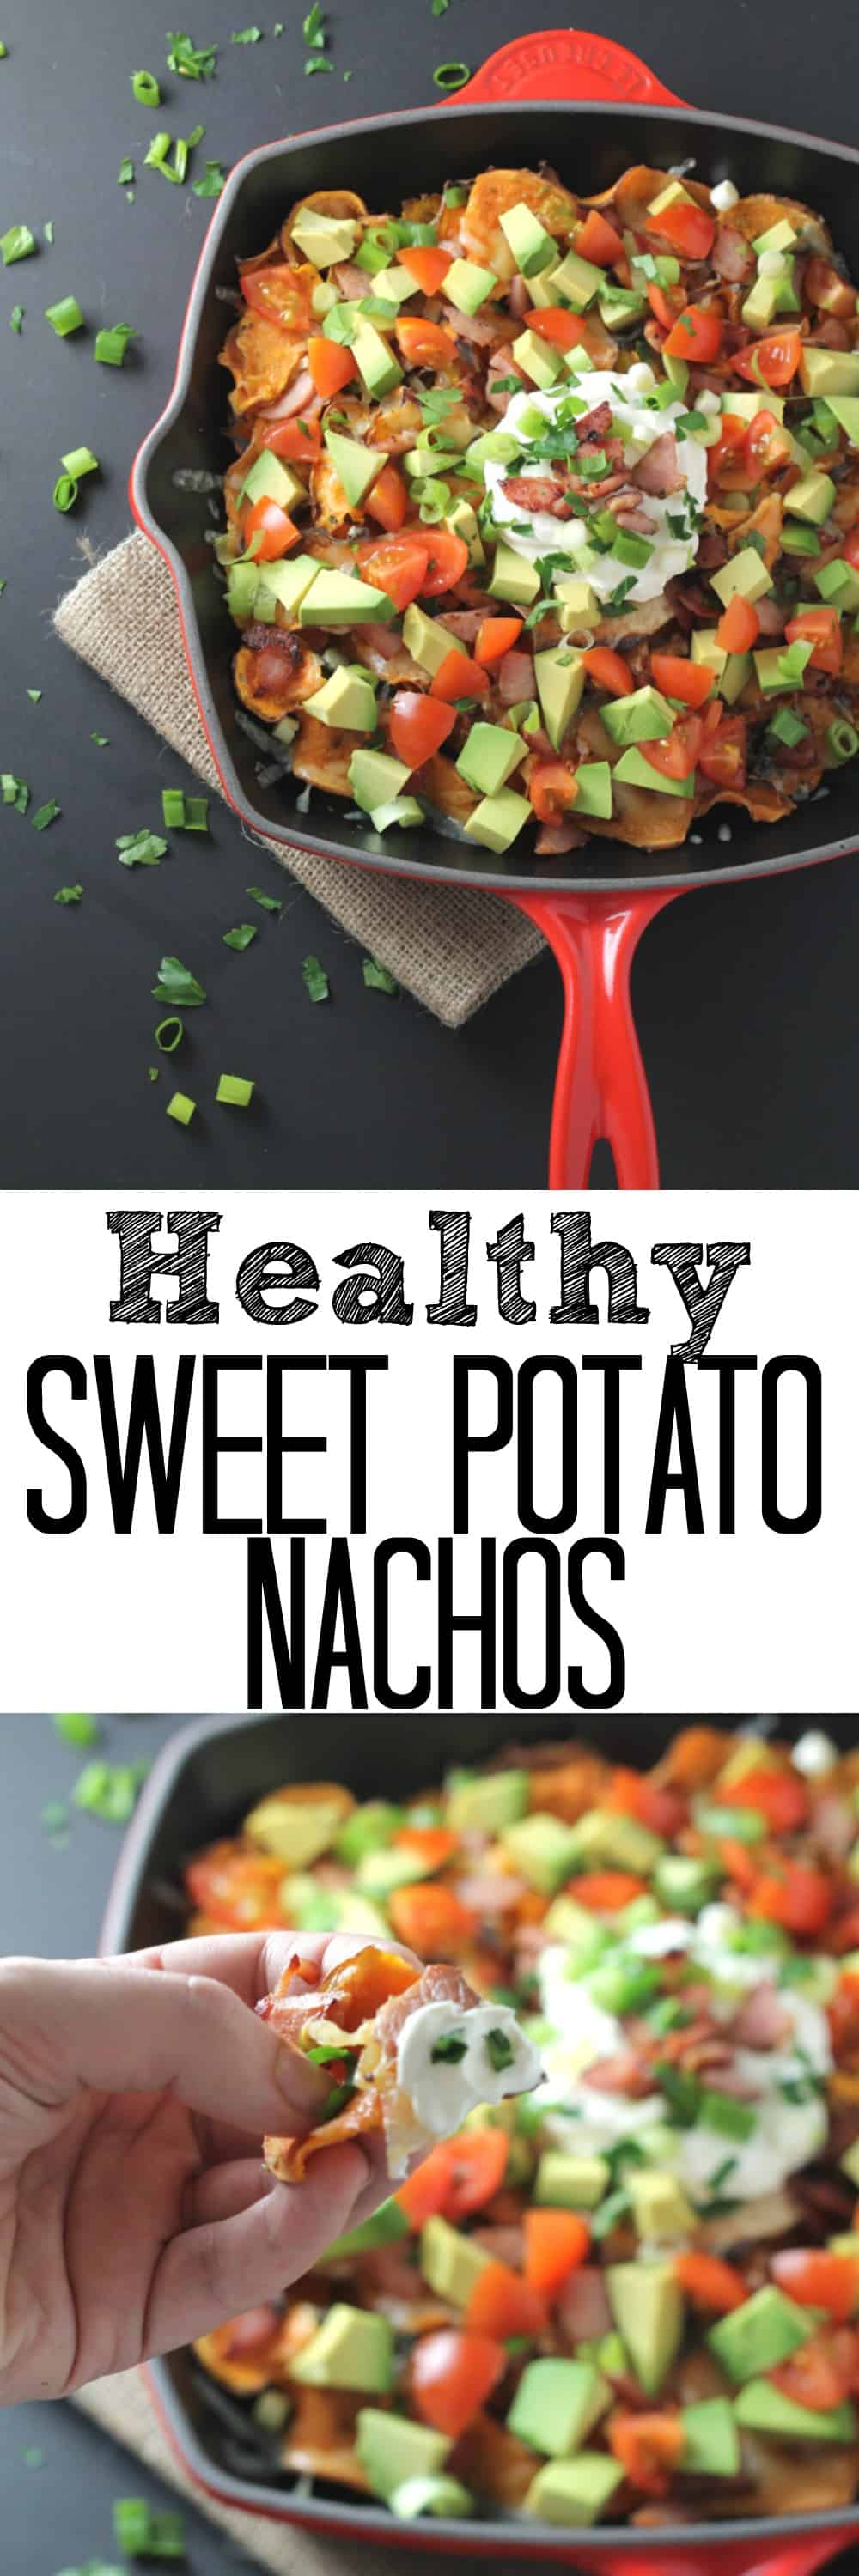 Healthy Sweet Potato Nachos - My Fussy Eater | Easy Family Recipes